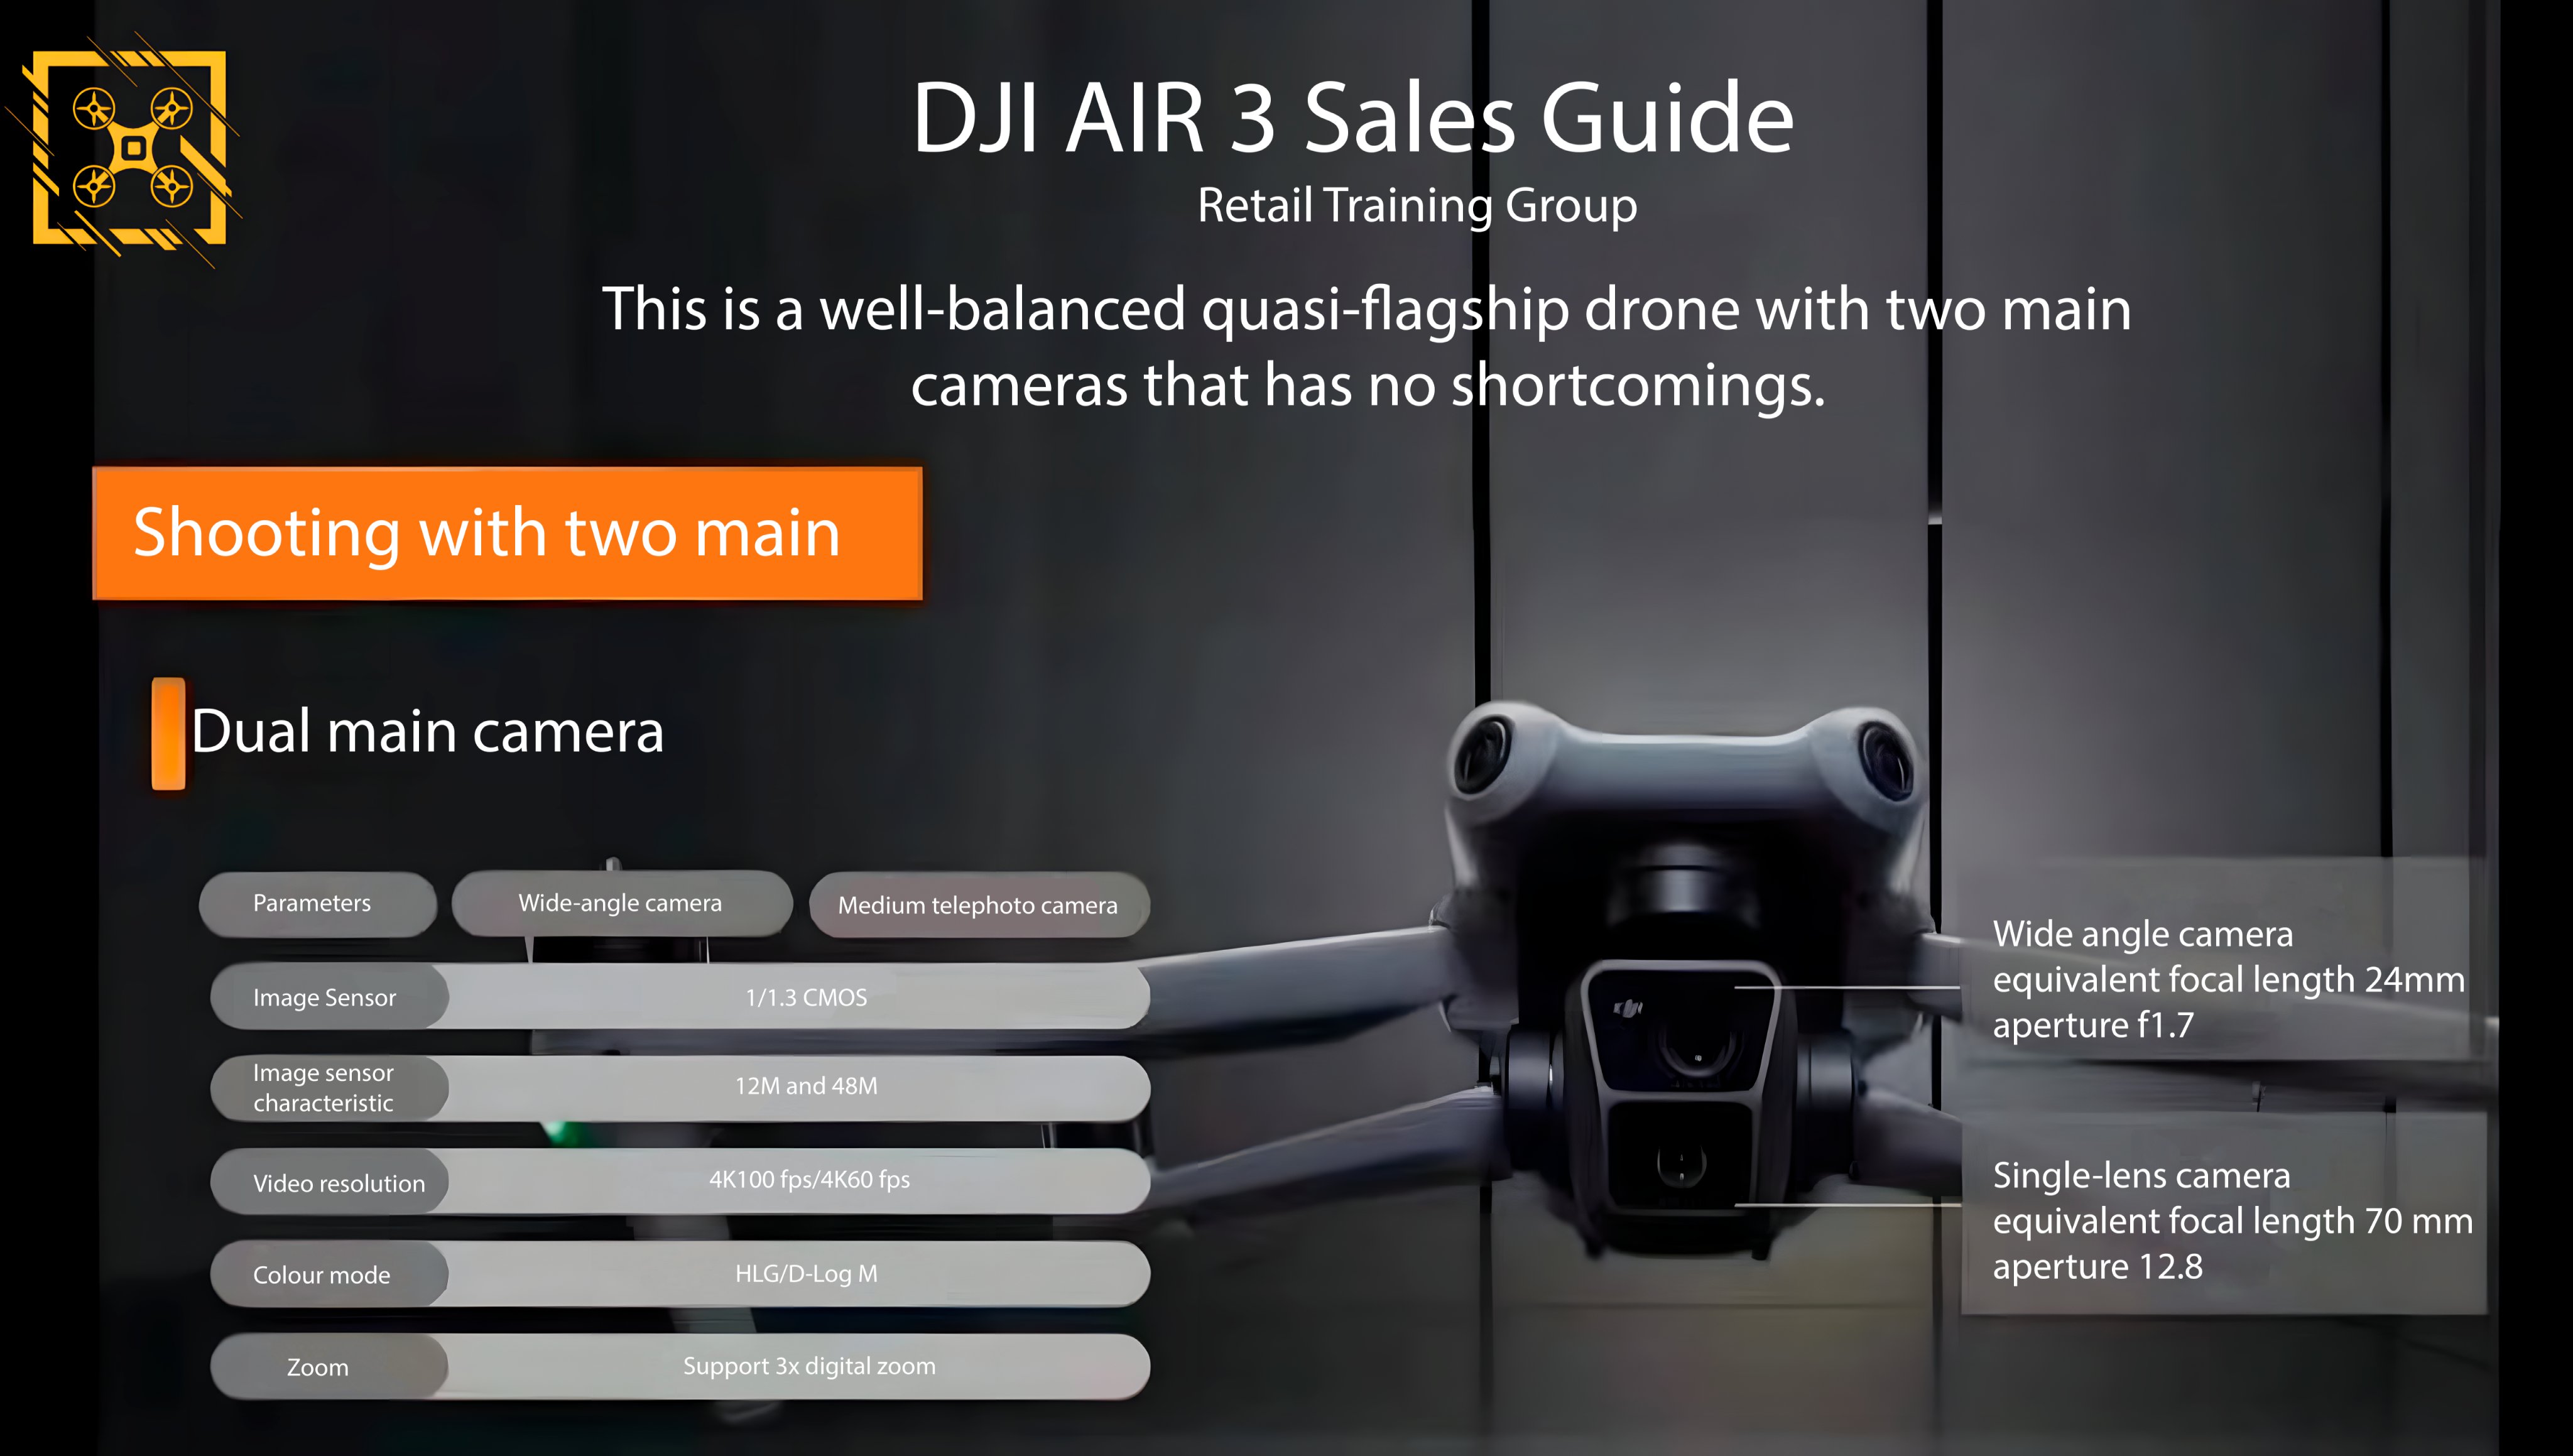 DJI Air 3 - Double Up - DJI